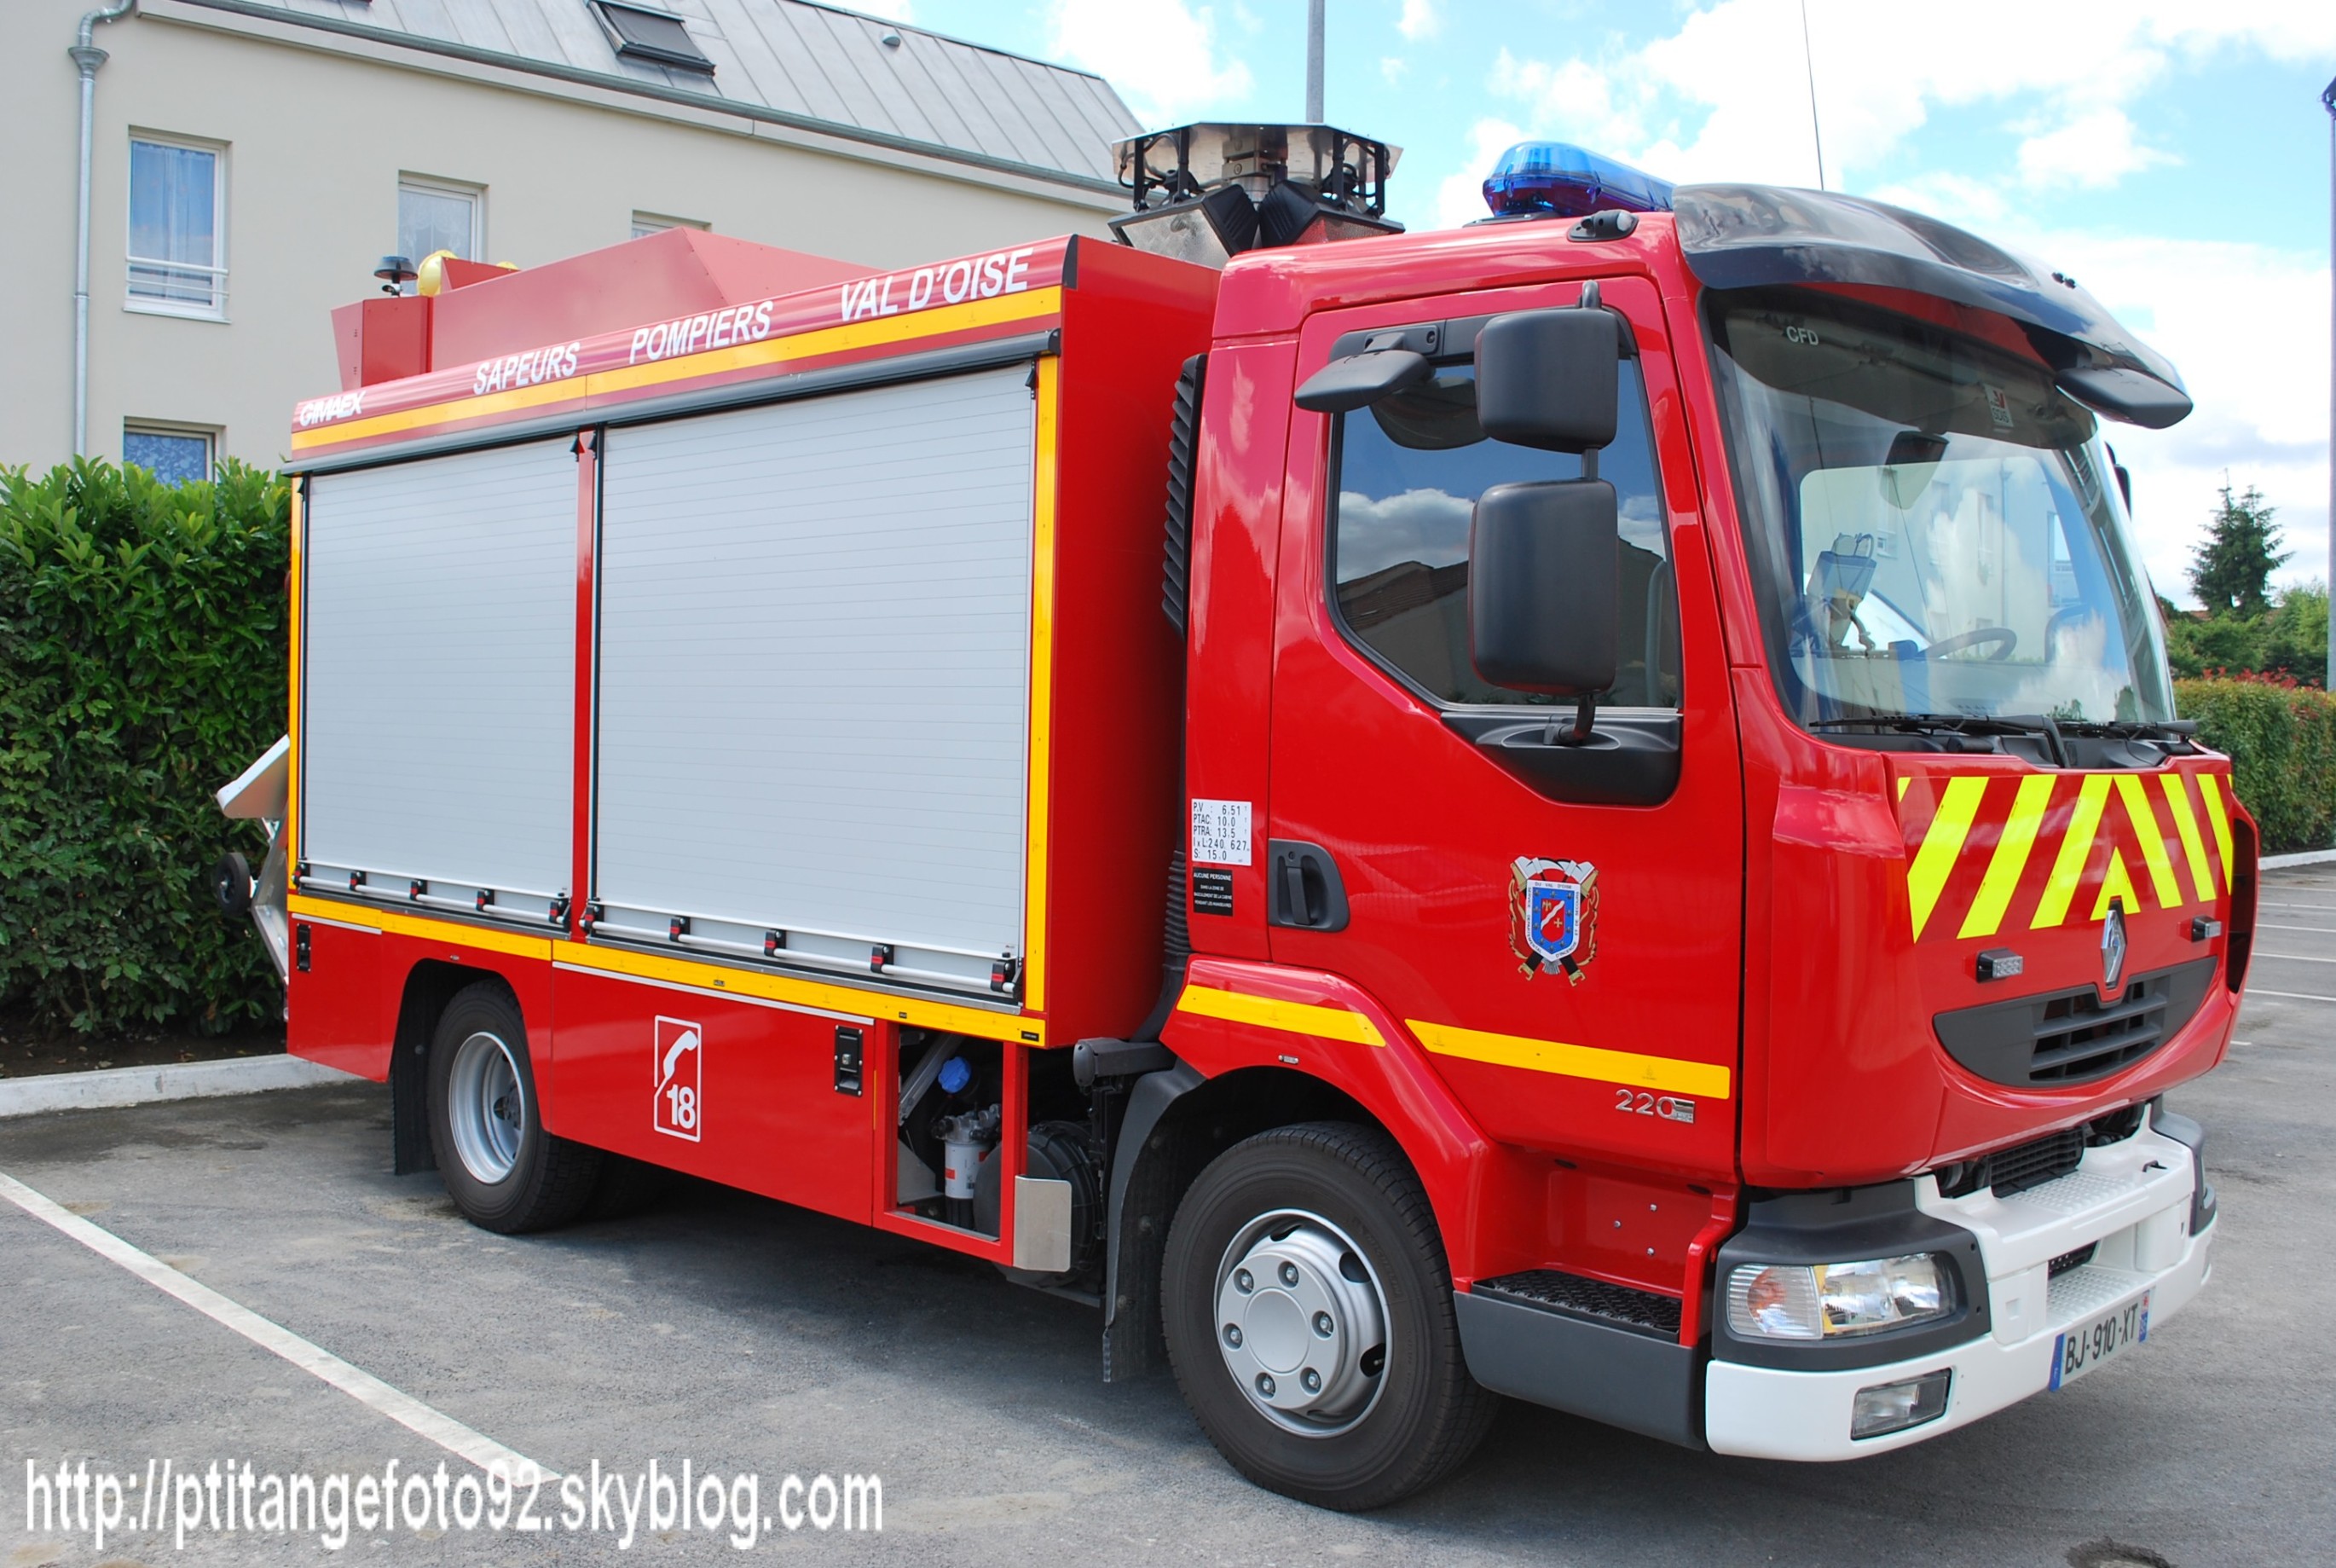 Un camion dernière génération pour les sapeurs-pompiers d'Anglure